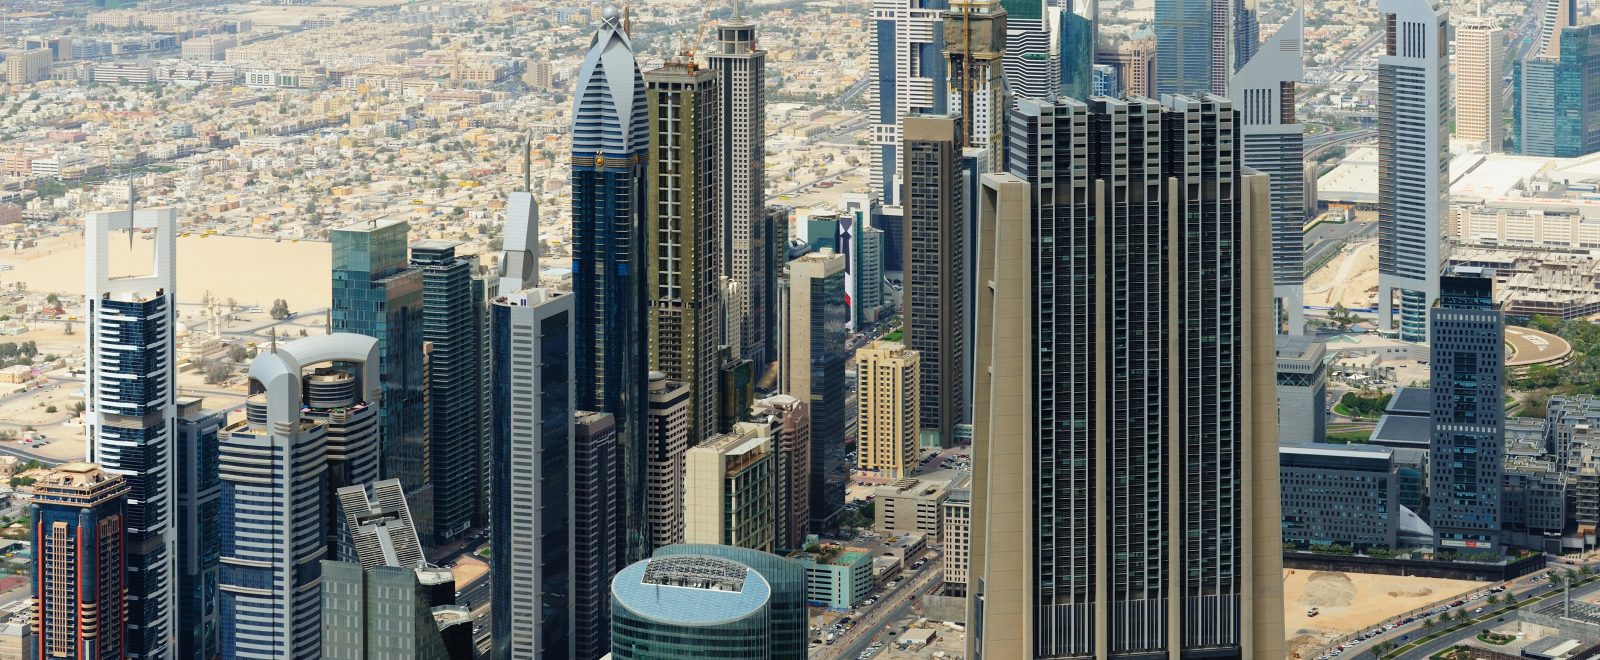 Index Tower Dubai